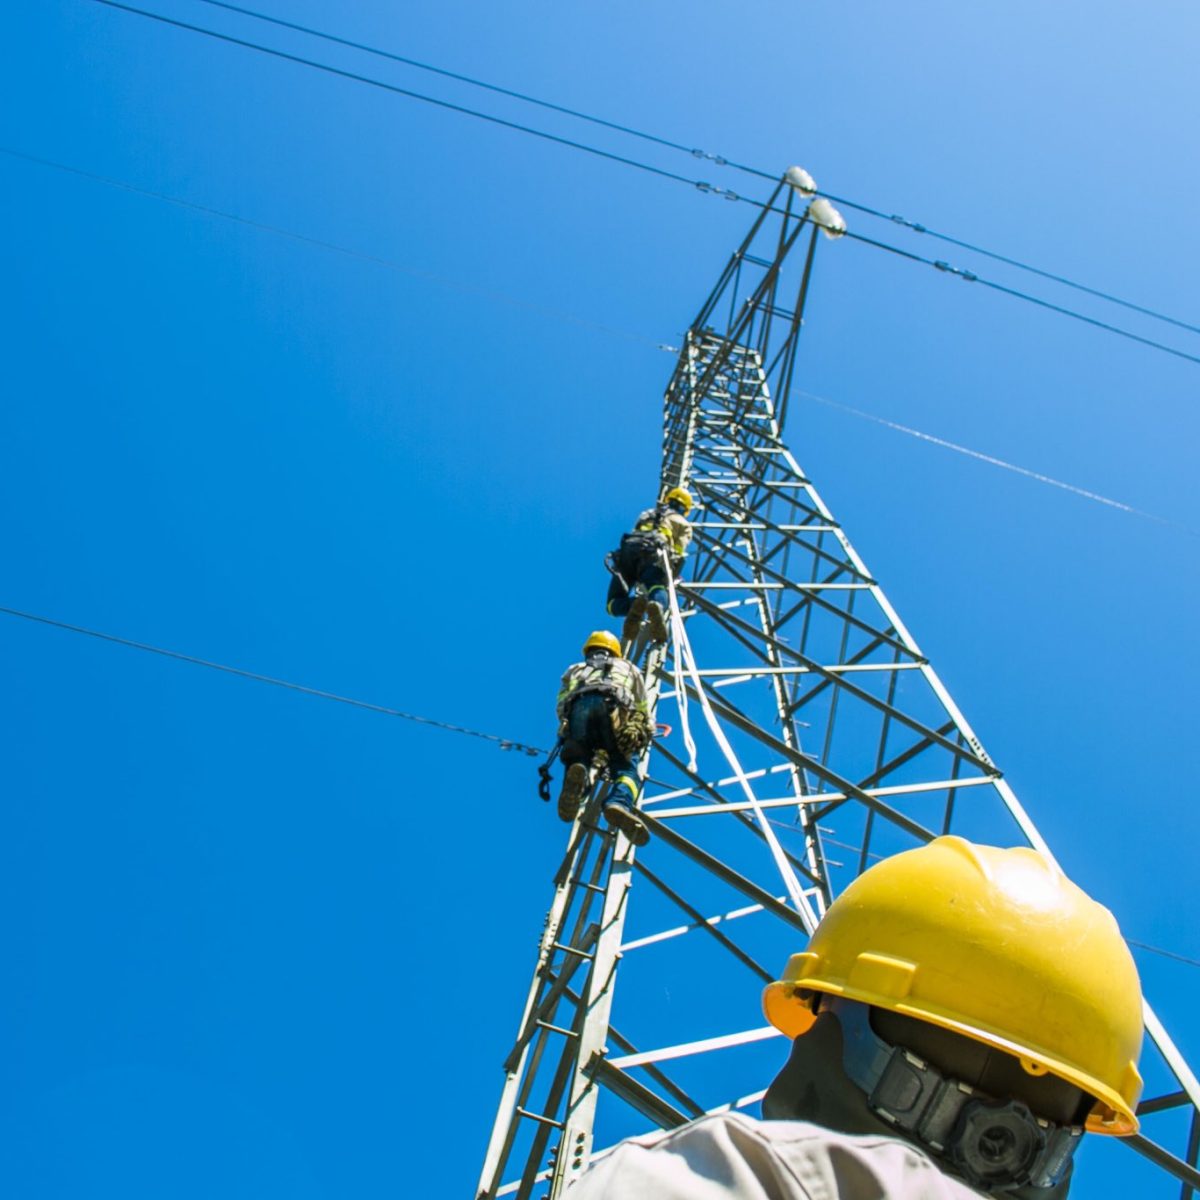 Edenorte interrumpirá servicio eléctrico este lunes en algunas zonas por mantenimiento